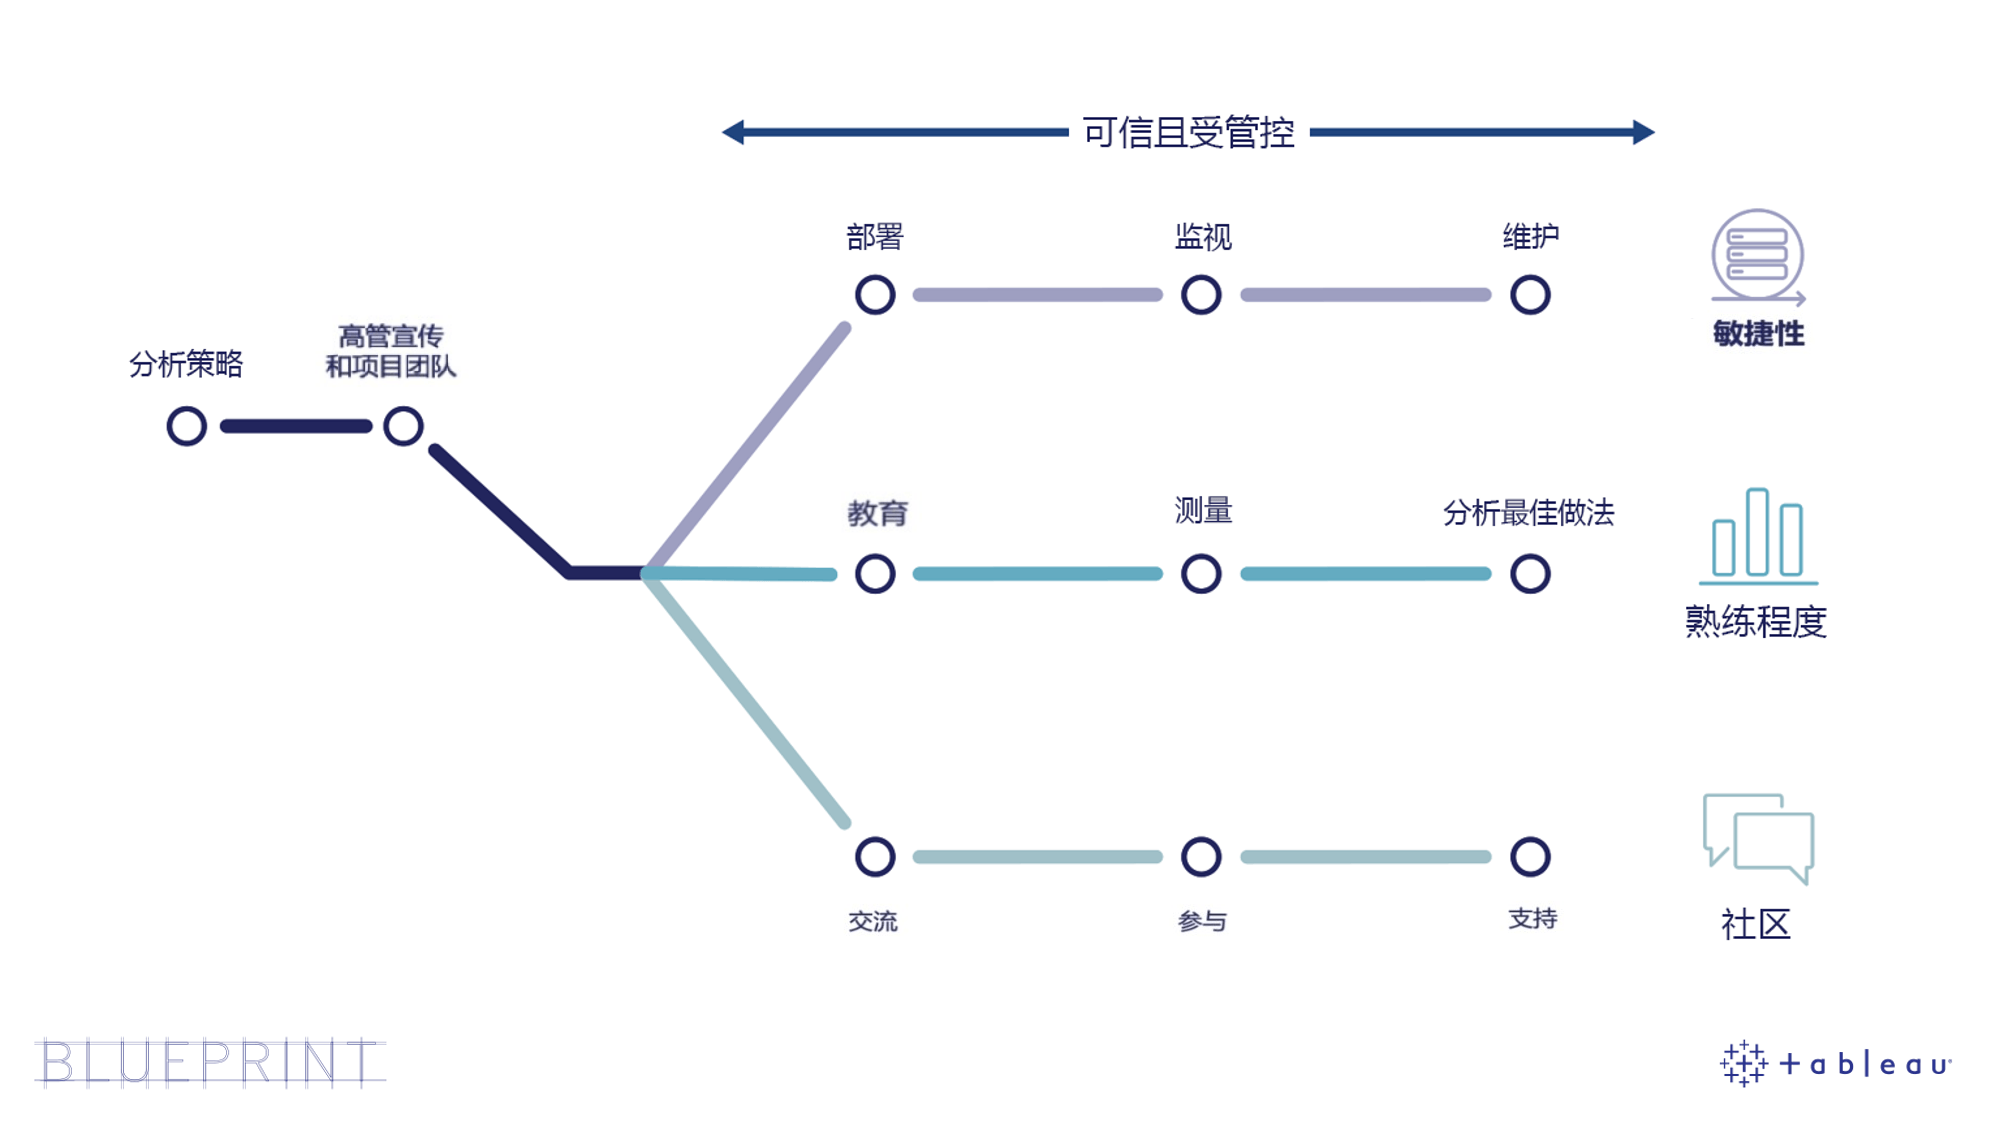 Tableau Blueprint 线路图图示